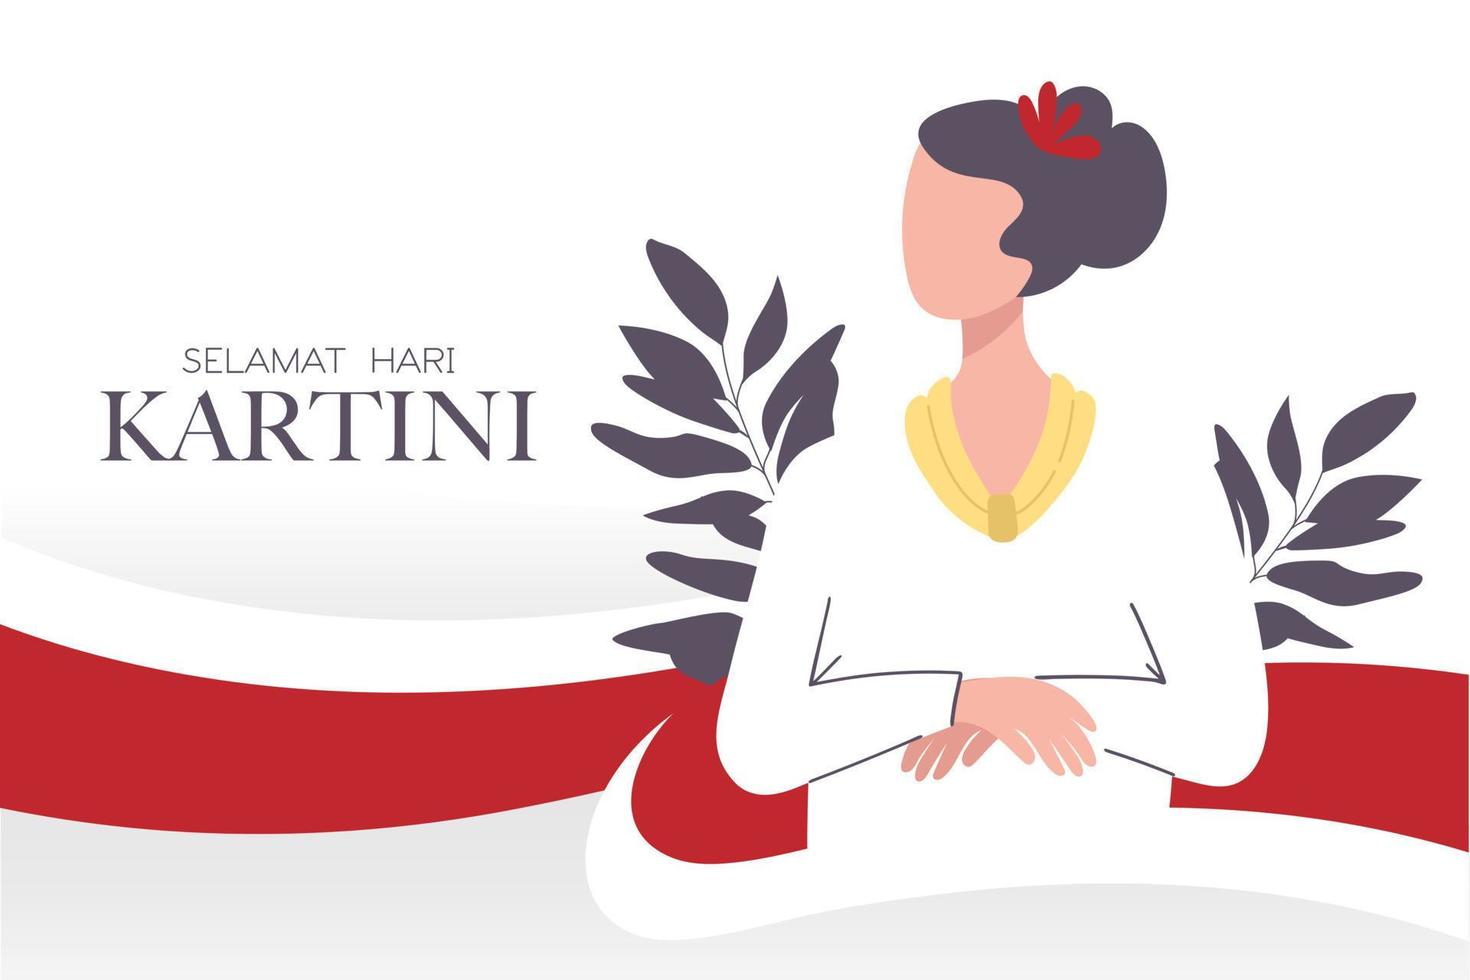 selamat hari kartini firande glad kartini dag. indonesisk aktivist som förespråkade kvinnors rättigheter och kvinnlig utbildning. feminismhjältar. vektor